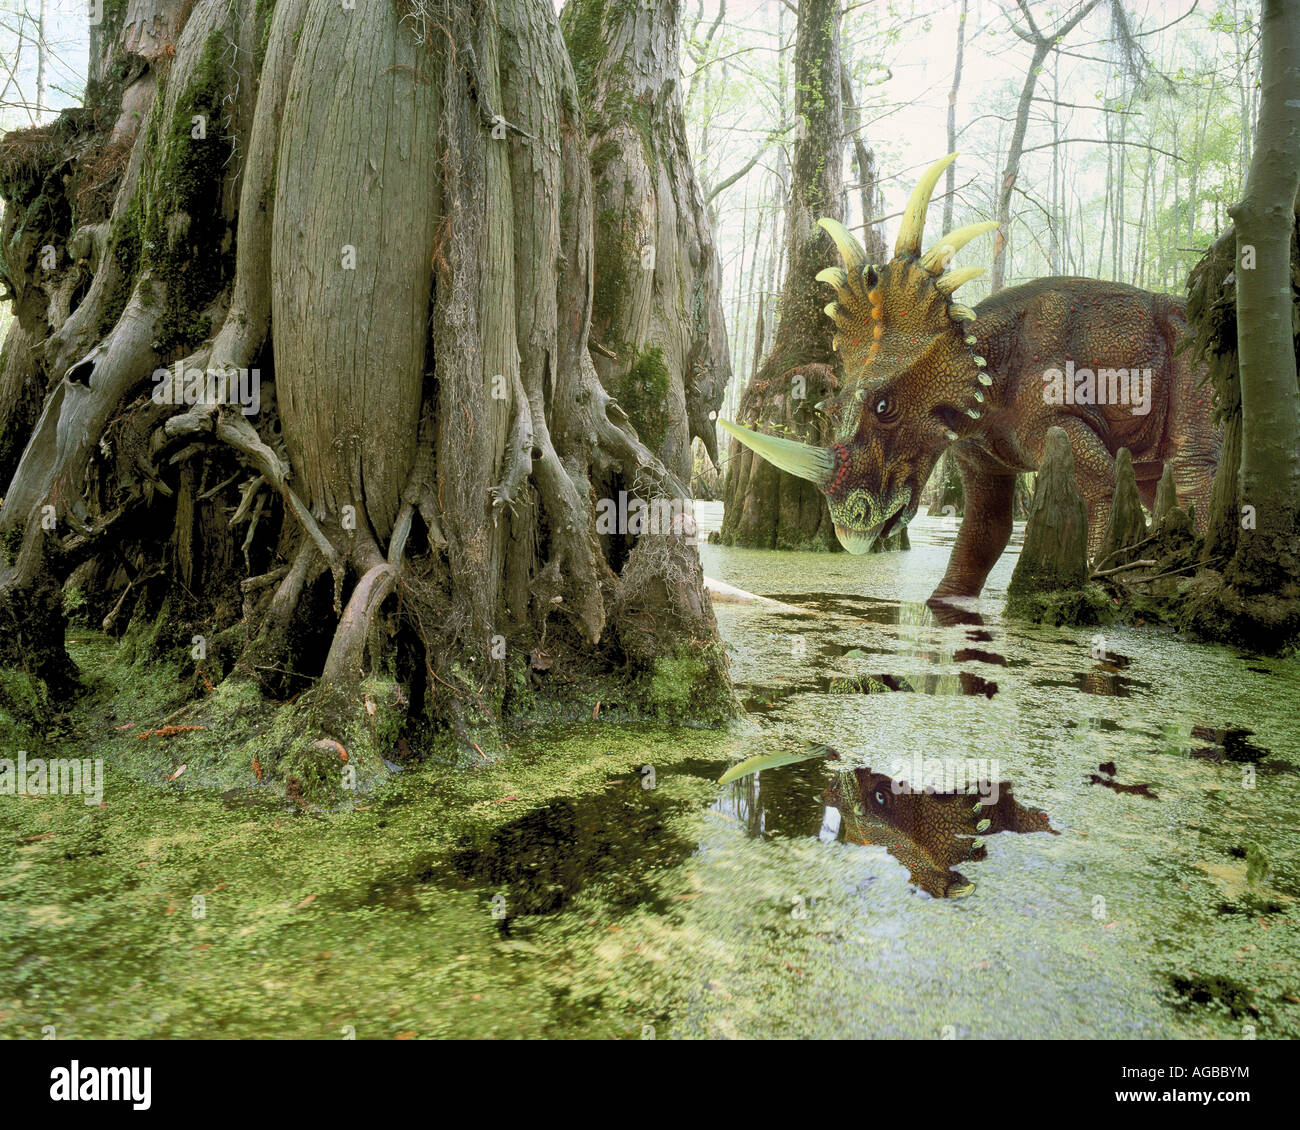 Styrachosaurus dinosaur in swamp Stock Photo